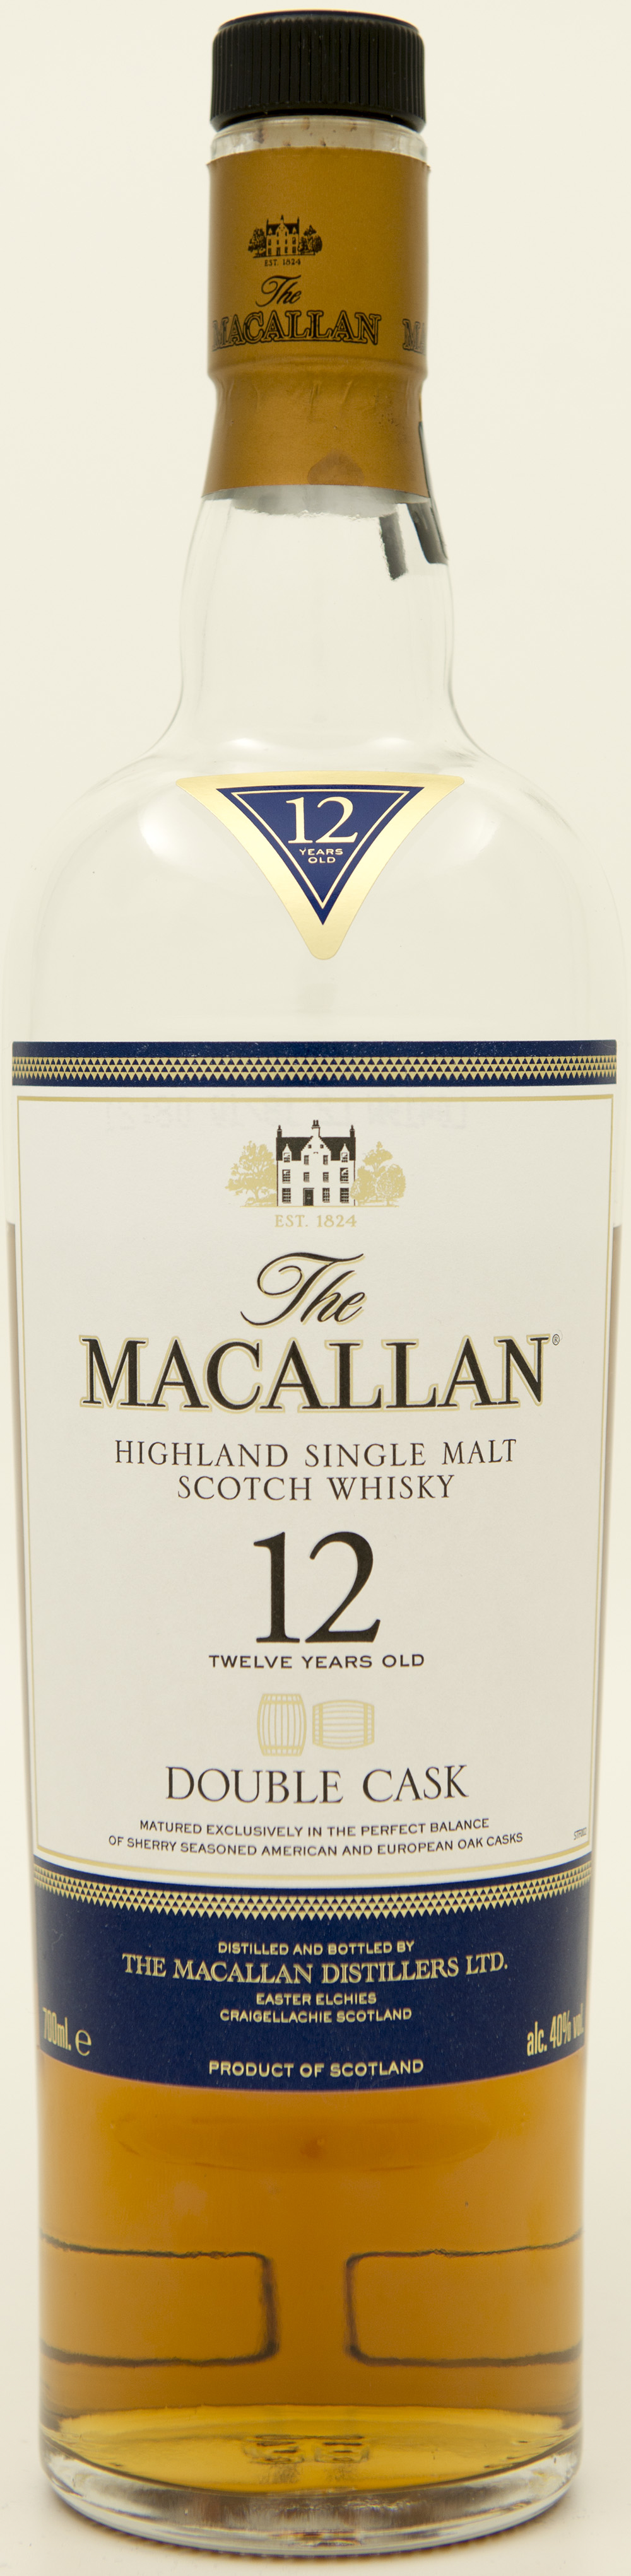 Billede: DSC_3653 - The MacAllan 12 Double Cask - bottle front.jpg